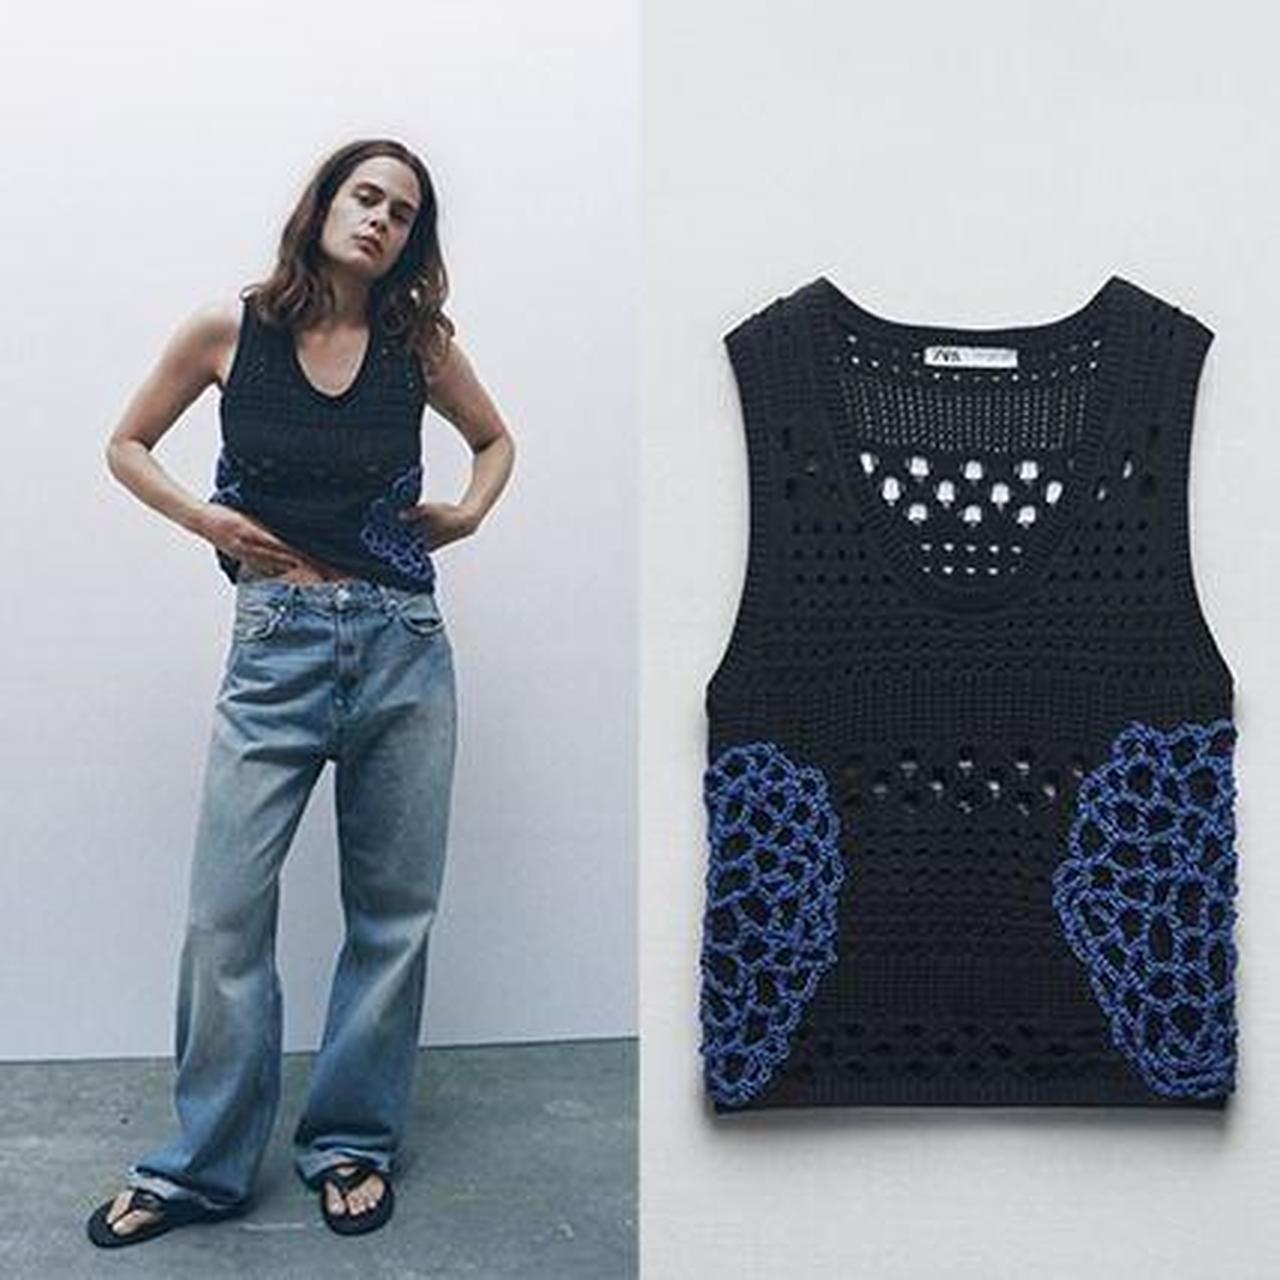 ZARA Light Blue Crochet Knit Bralette Top - $27 - From Mia